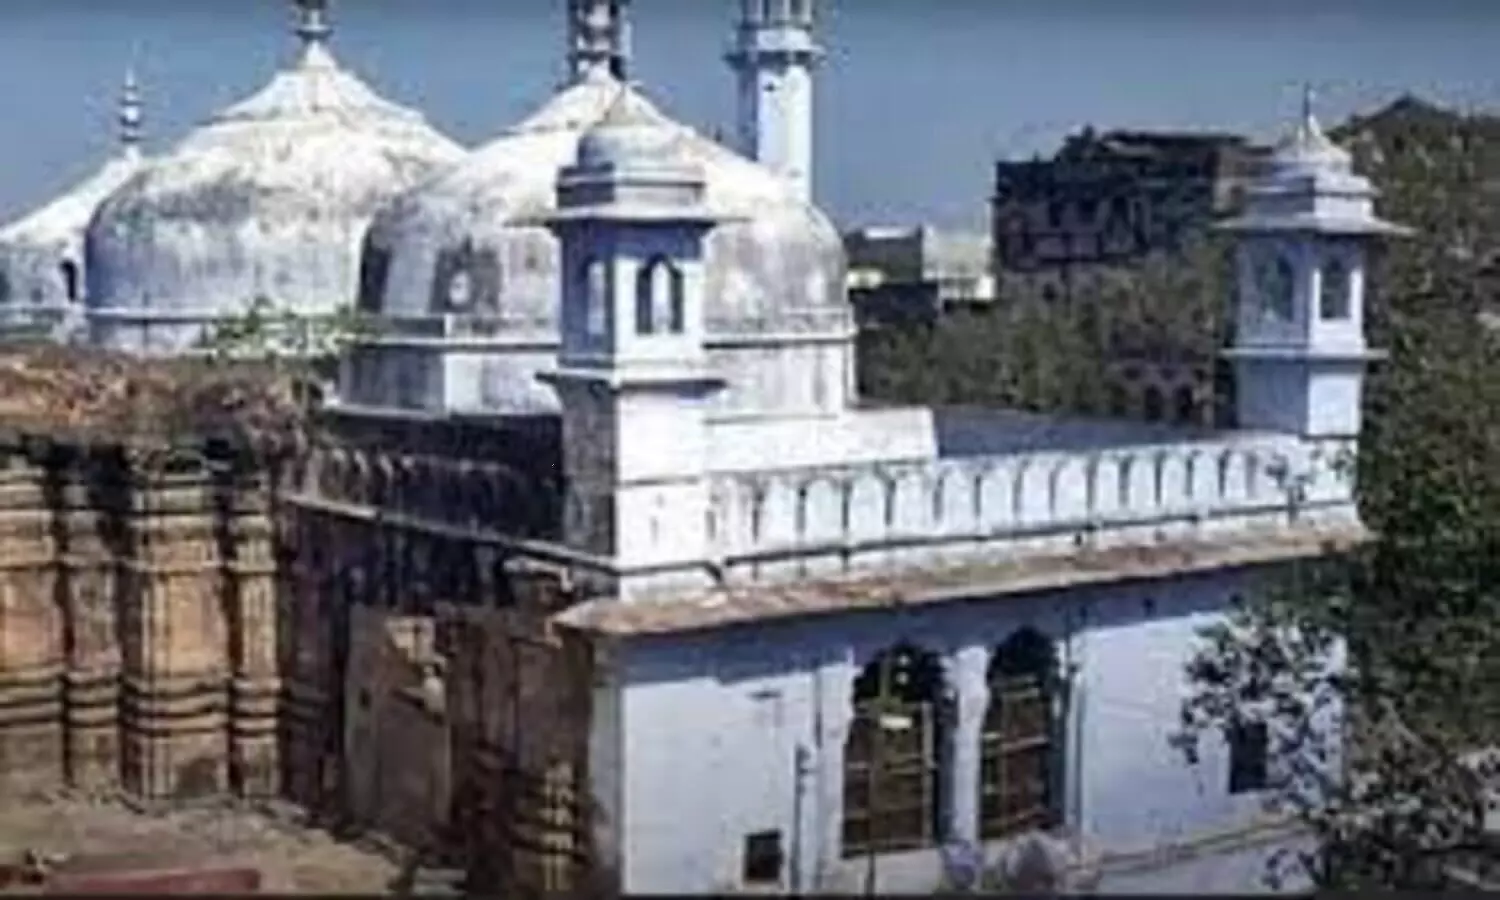 Gyanvapi Case: ज्ञानवापी मस्जिद की इंतजामिया कमेटी ने जुमे के दिन बाजार बंद करने की घोषणा करते हुए मुसलमानों से ये अपील की